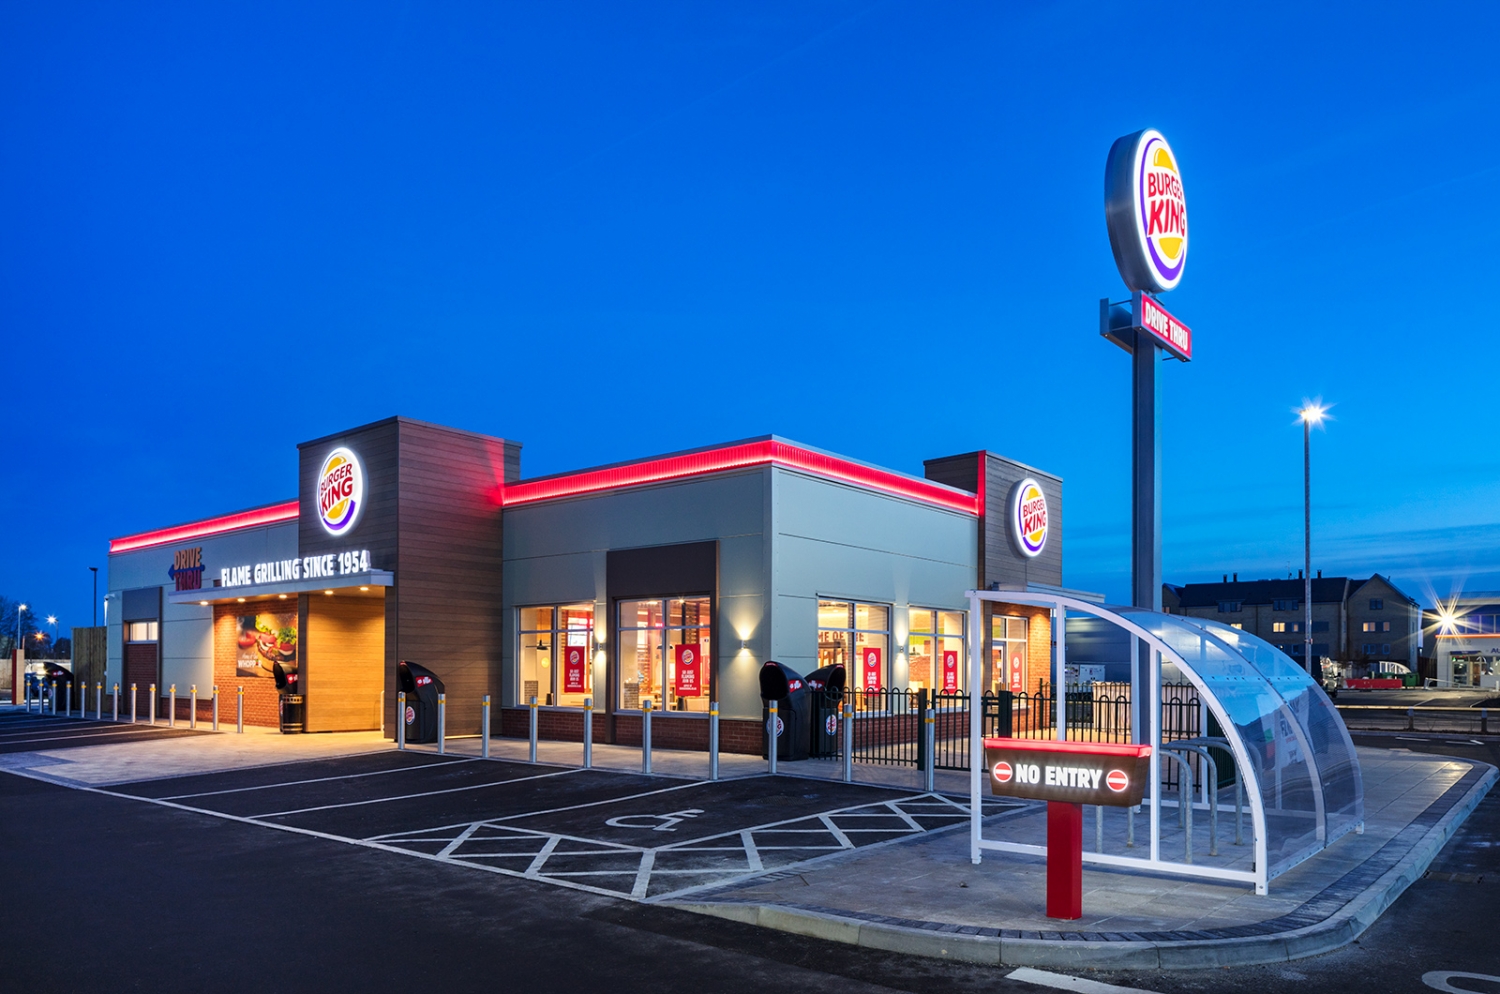 Burger King UK Drive-Thru - nationwide